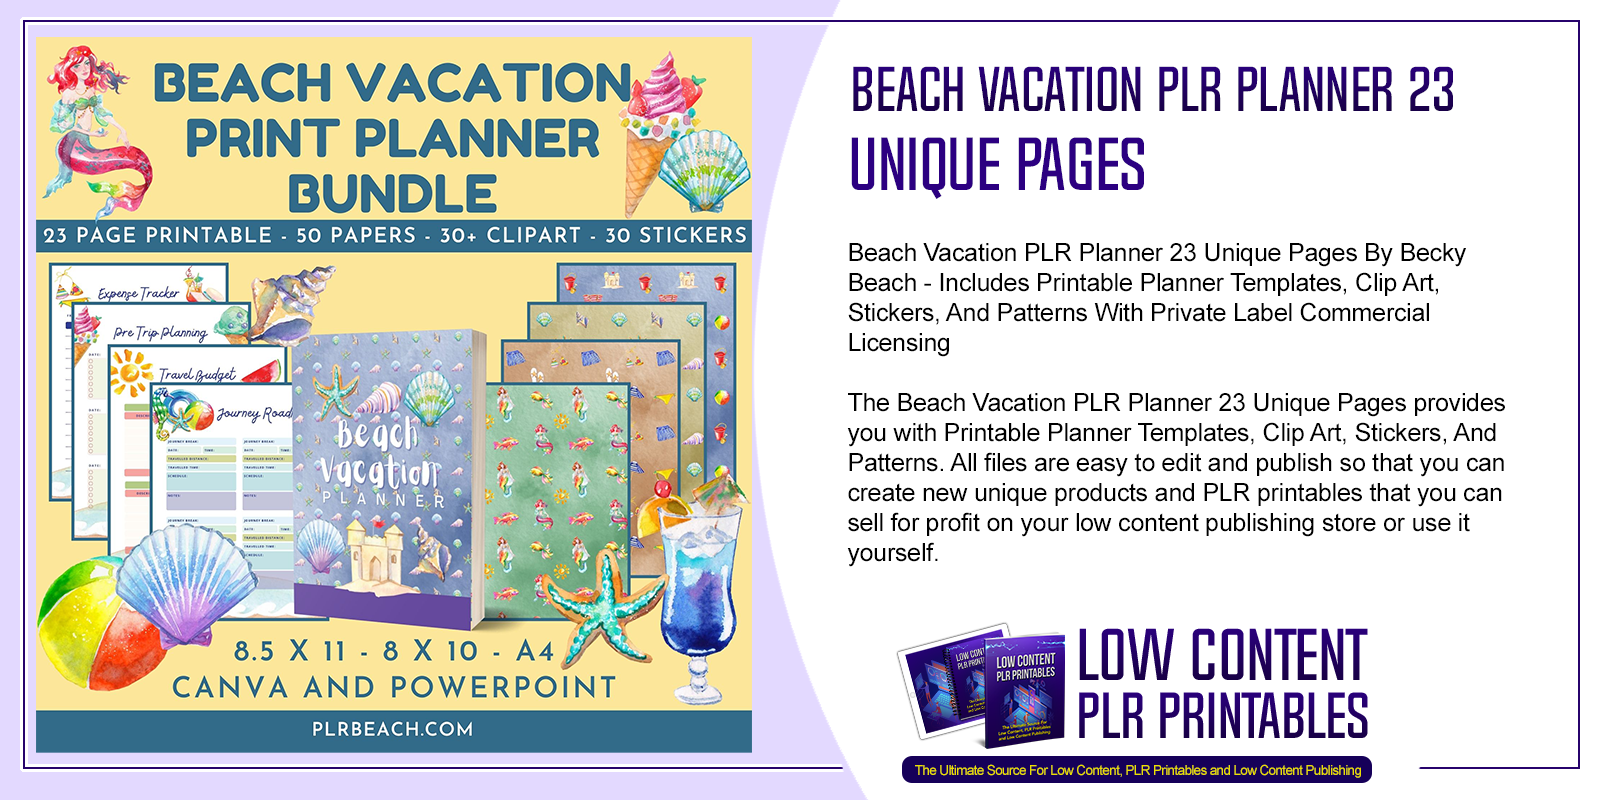 Beach Vacation PLR Planner 23 Unique Pages